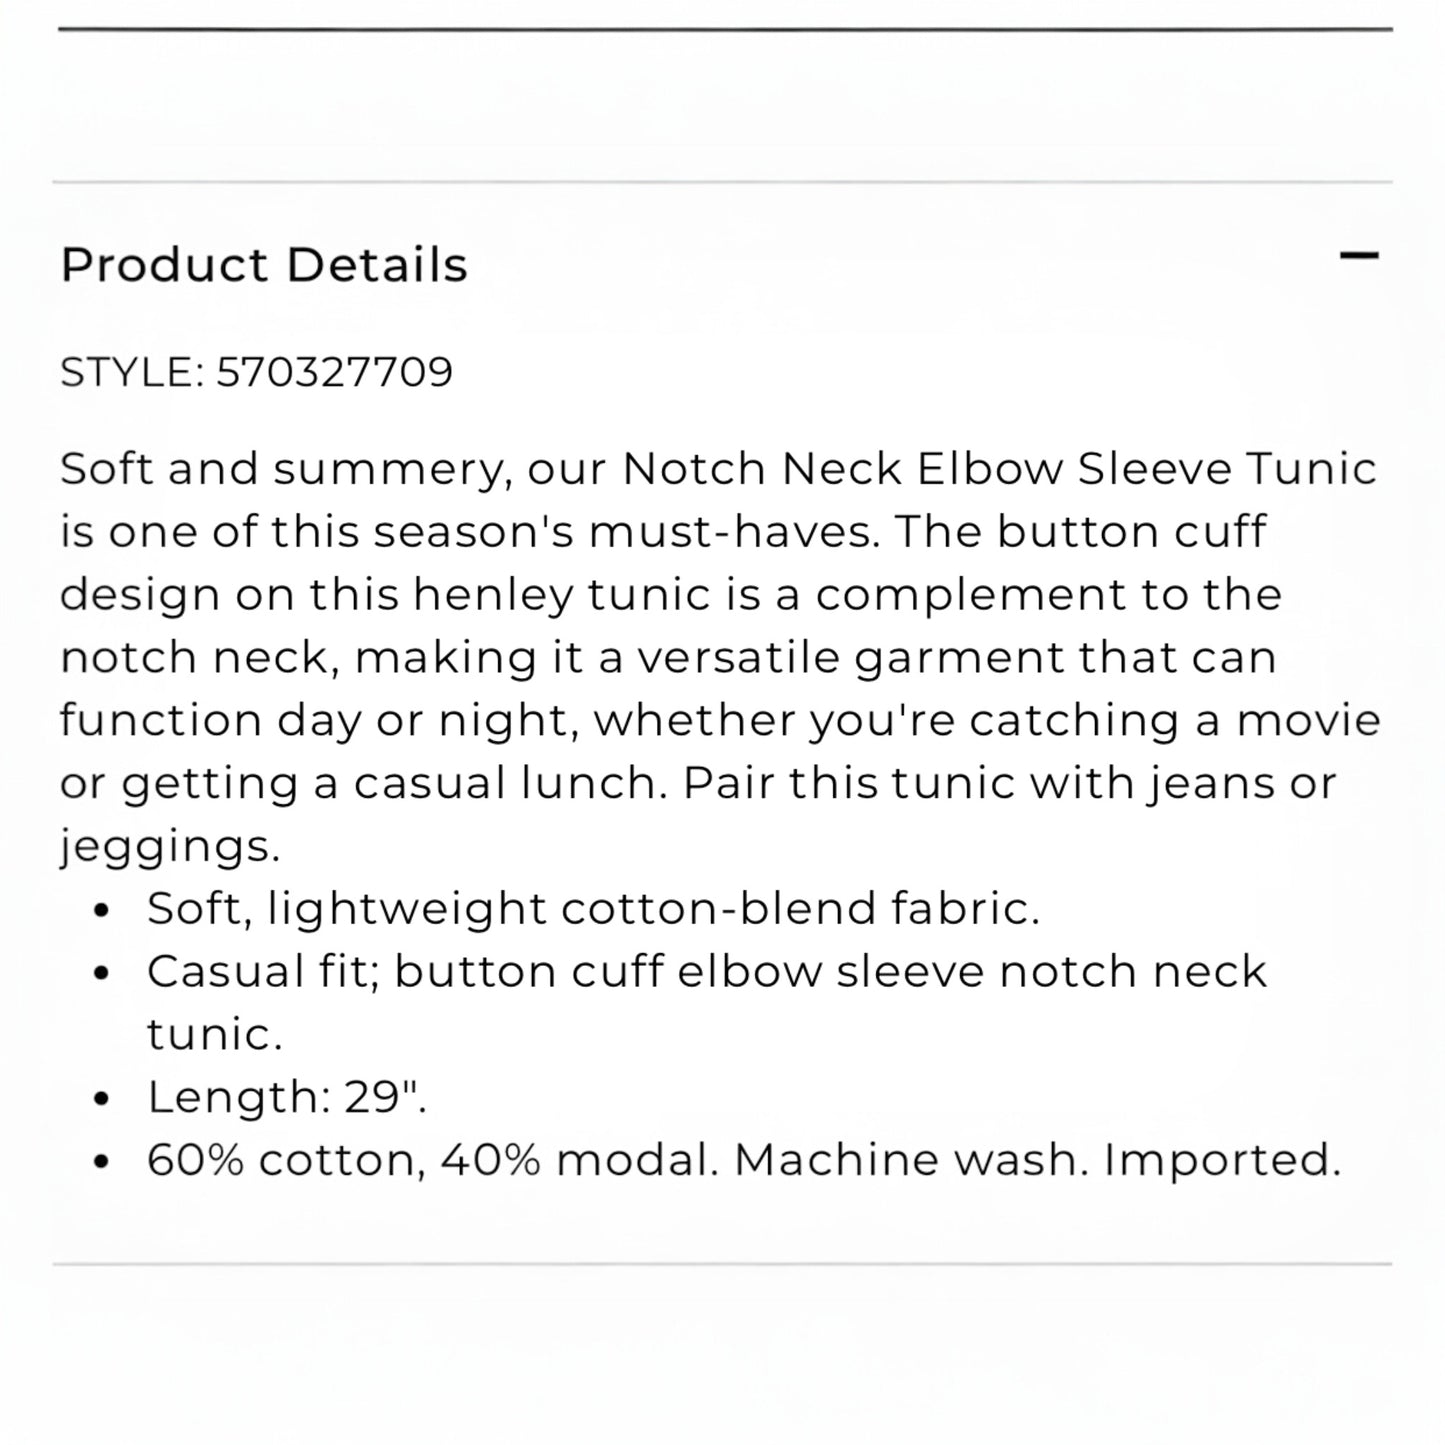 Chico's Notch Neck Elbow Sleeve Tunic - Size Large